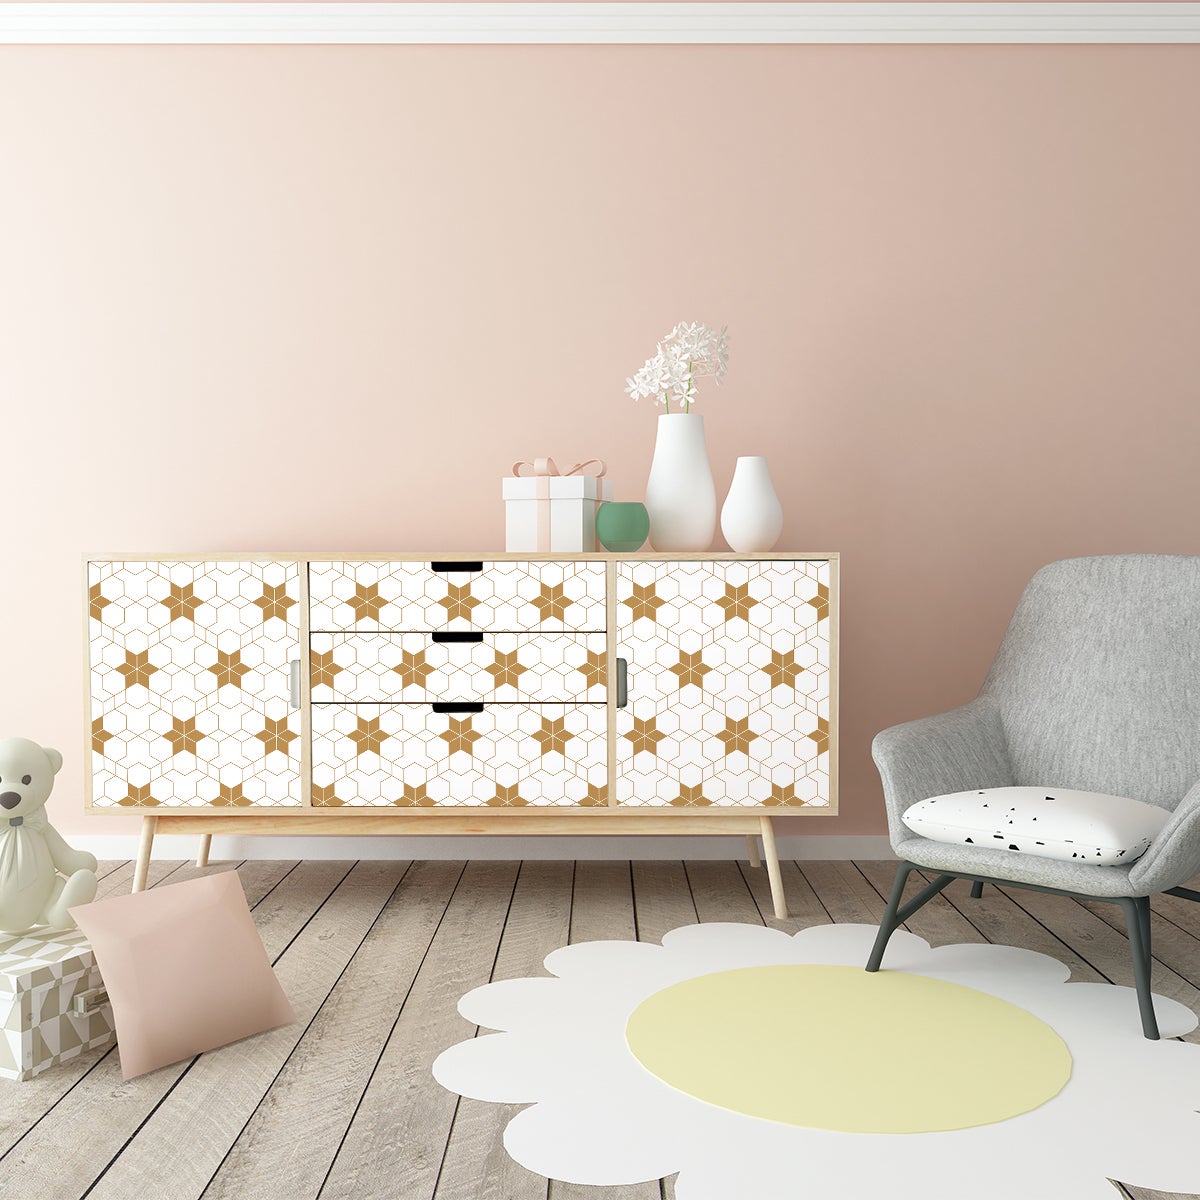 Vinilo muebles escandinavos hervin - adhesivo de pared - revestimiento  sticker mural decorativo - 40x60cm